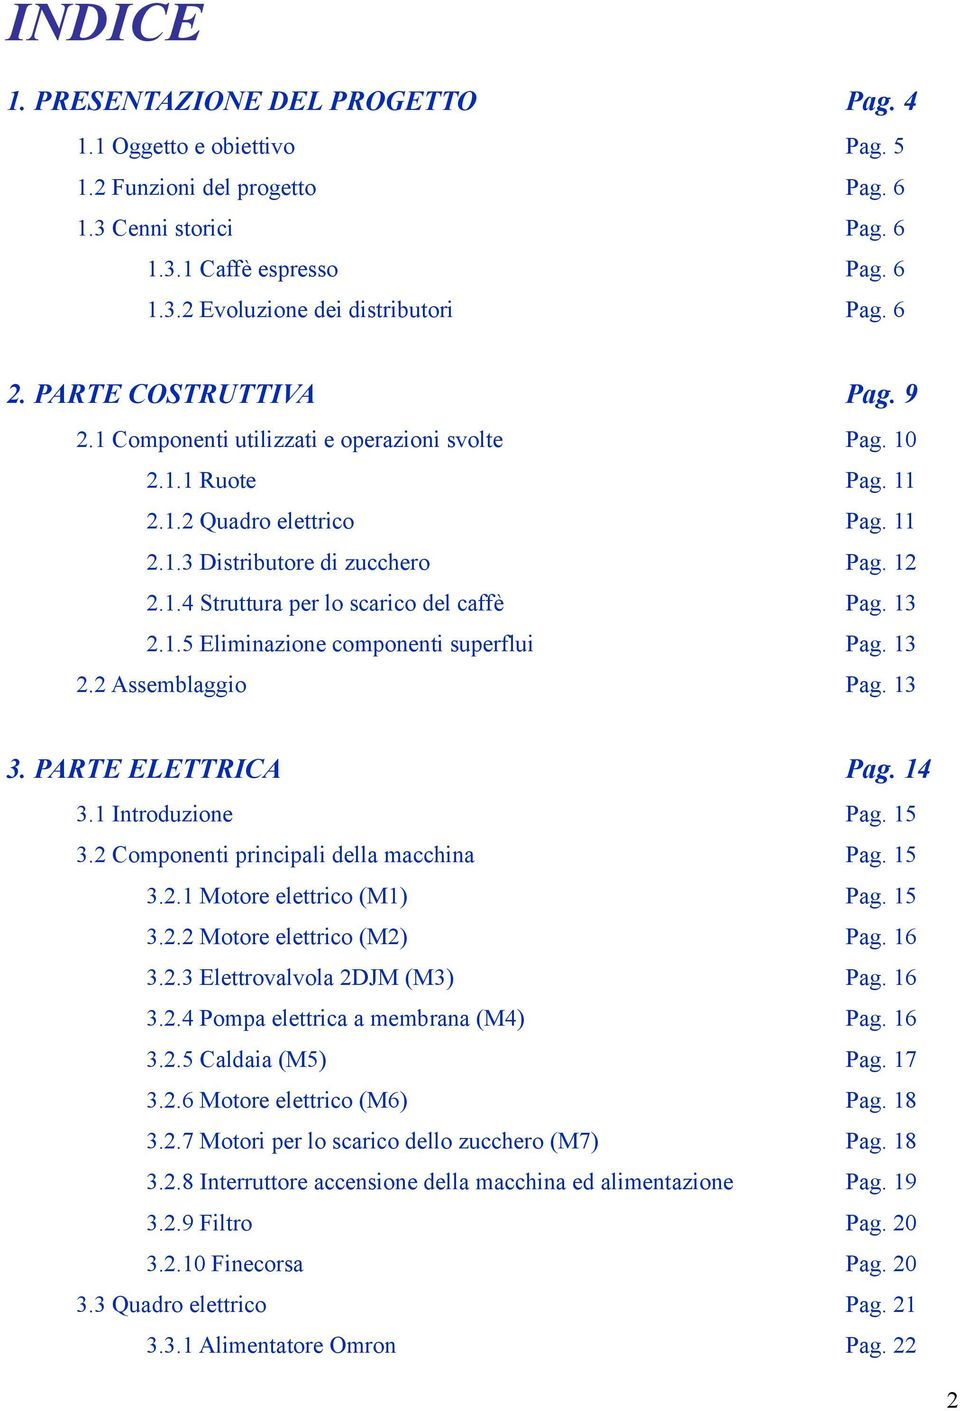 13 2.1.5 Eliminazione componenti superflui Pag. 13 2.2 Assemblaggio 3. PARTE ELETTRICA Pag. 13 Pag. 14 3.1 Introduzione Pag. 15 3.2 Componenti principali della macchina Pag. 15 3.2.1 Motore elettrico (M1) Pag.